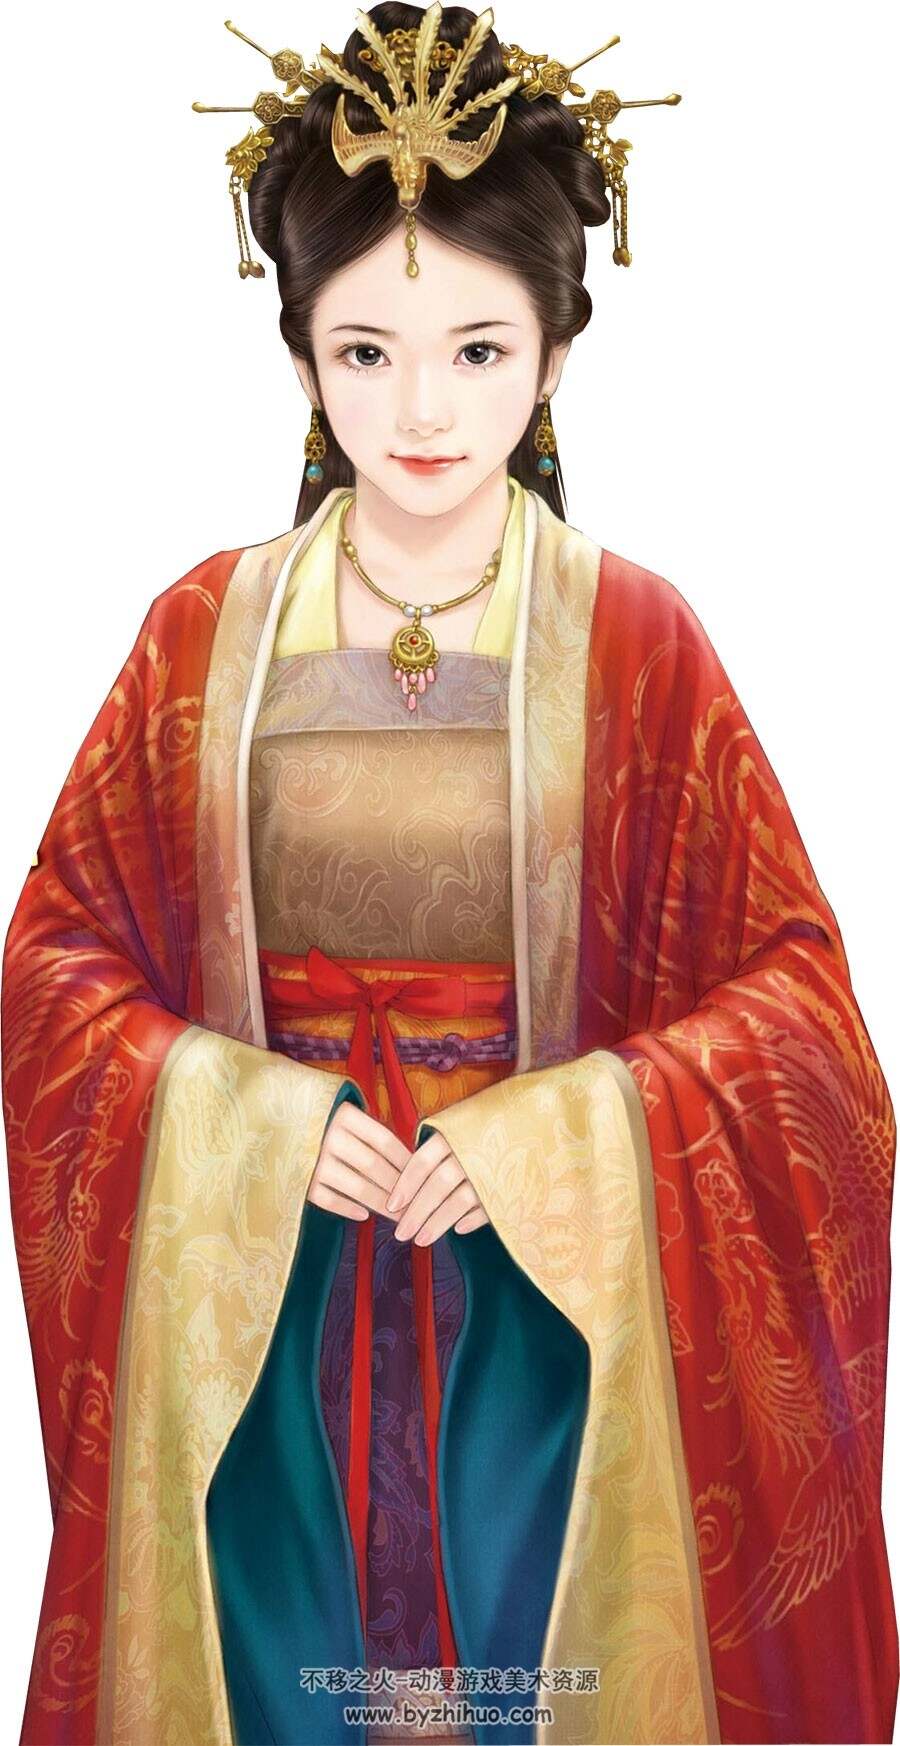 中式古装男女角色立绘 PNG格式免扣图分享下载 1226P